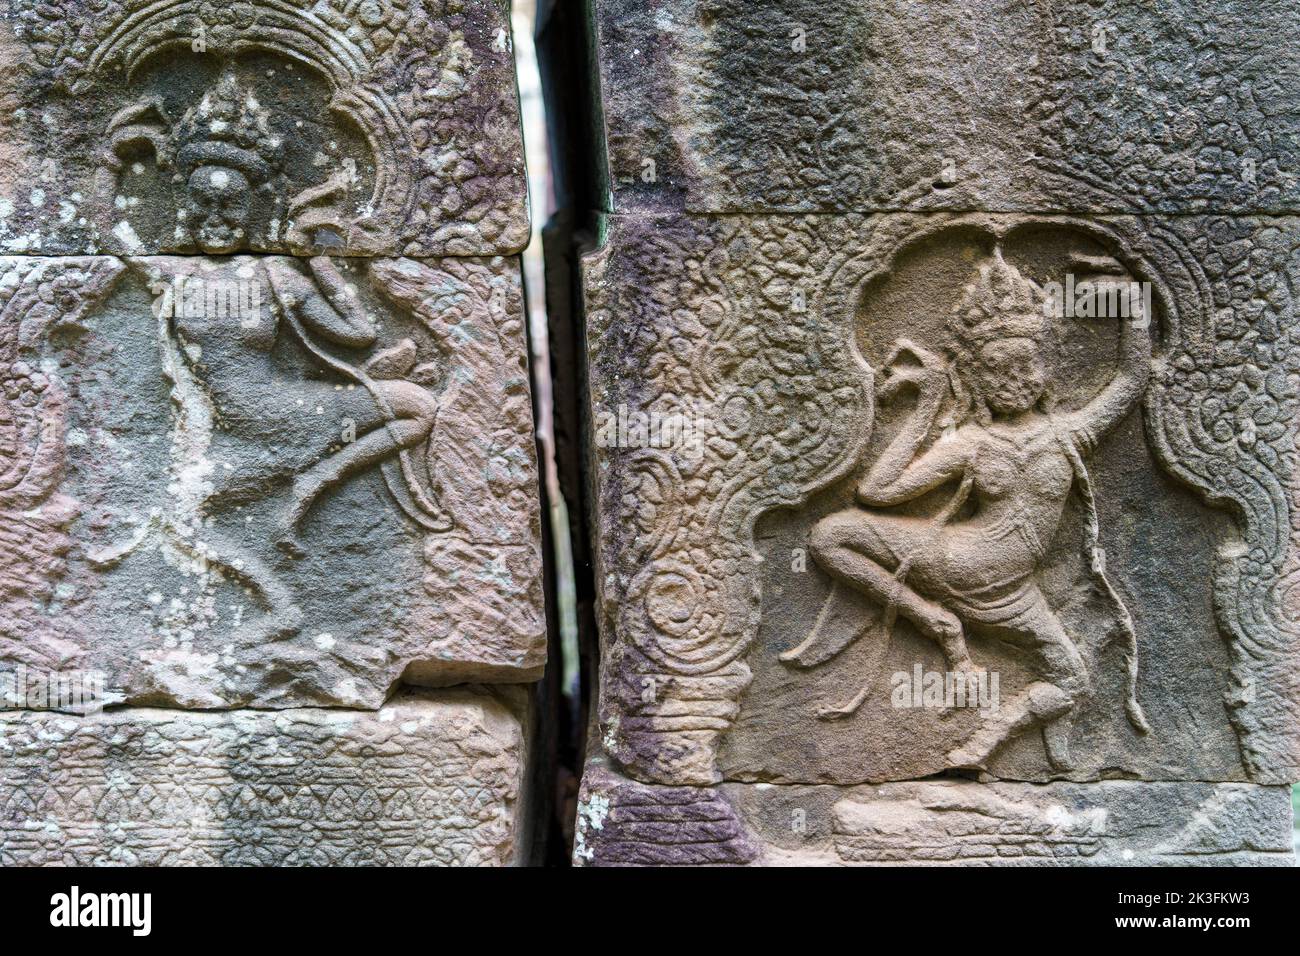 Camboya. Provincia de Siem Reap. El parque arqueológico de Angkor. Templo Banteay Kdei. Escultura en bajorrelieve de la bailarina Apsara Foto de stock